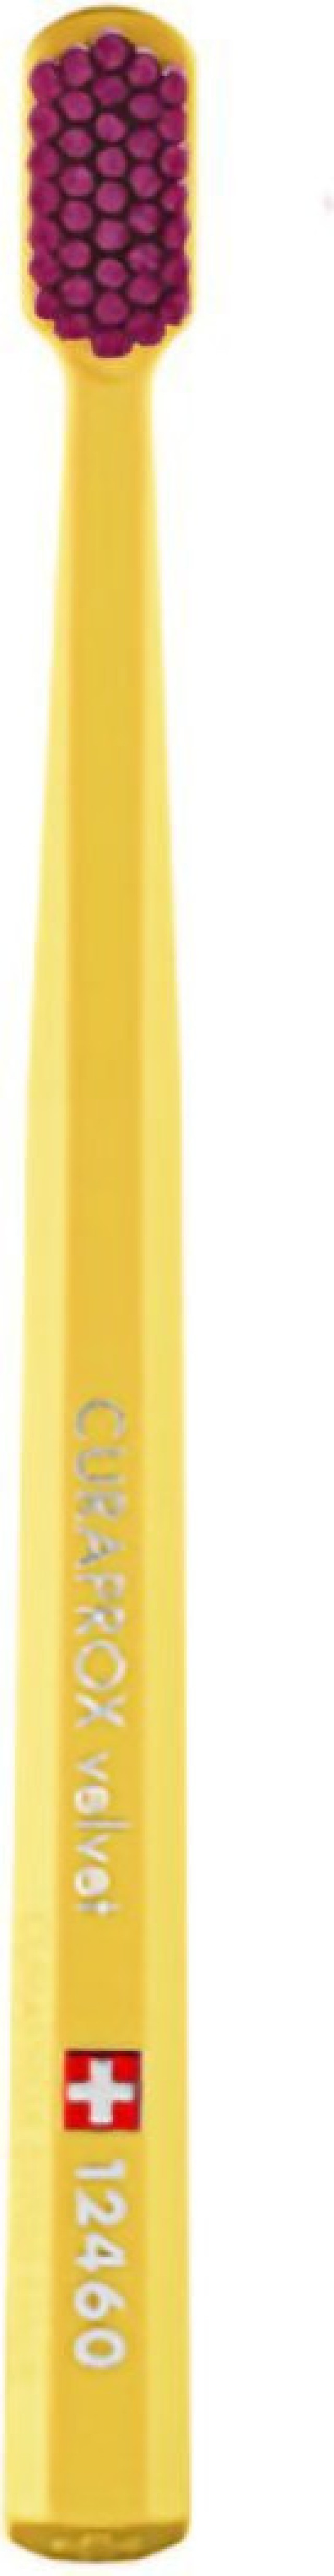 Curaprox 12460 Velvet Χρώμα Κίτρινο-Φούξια, 1τμχ